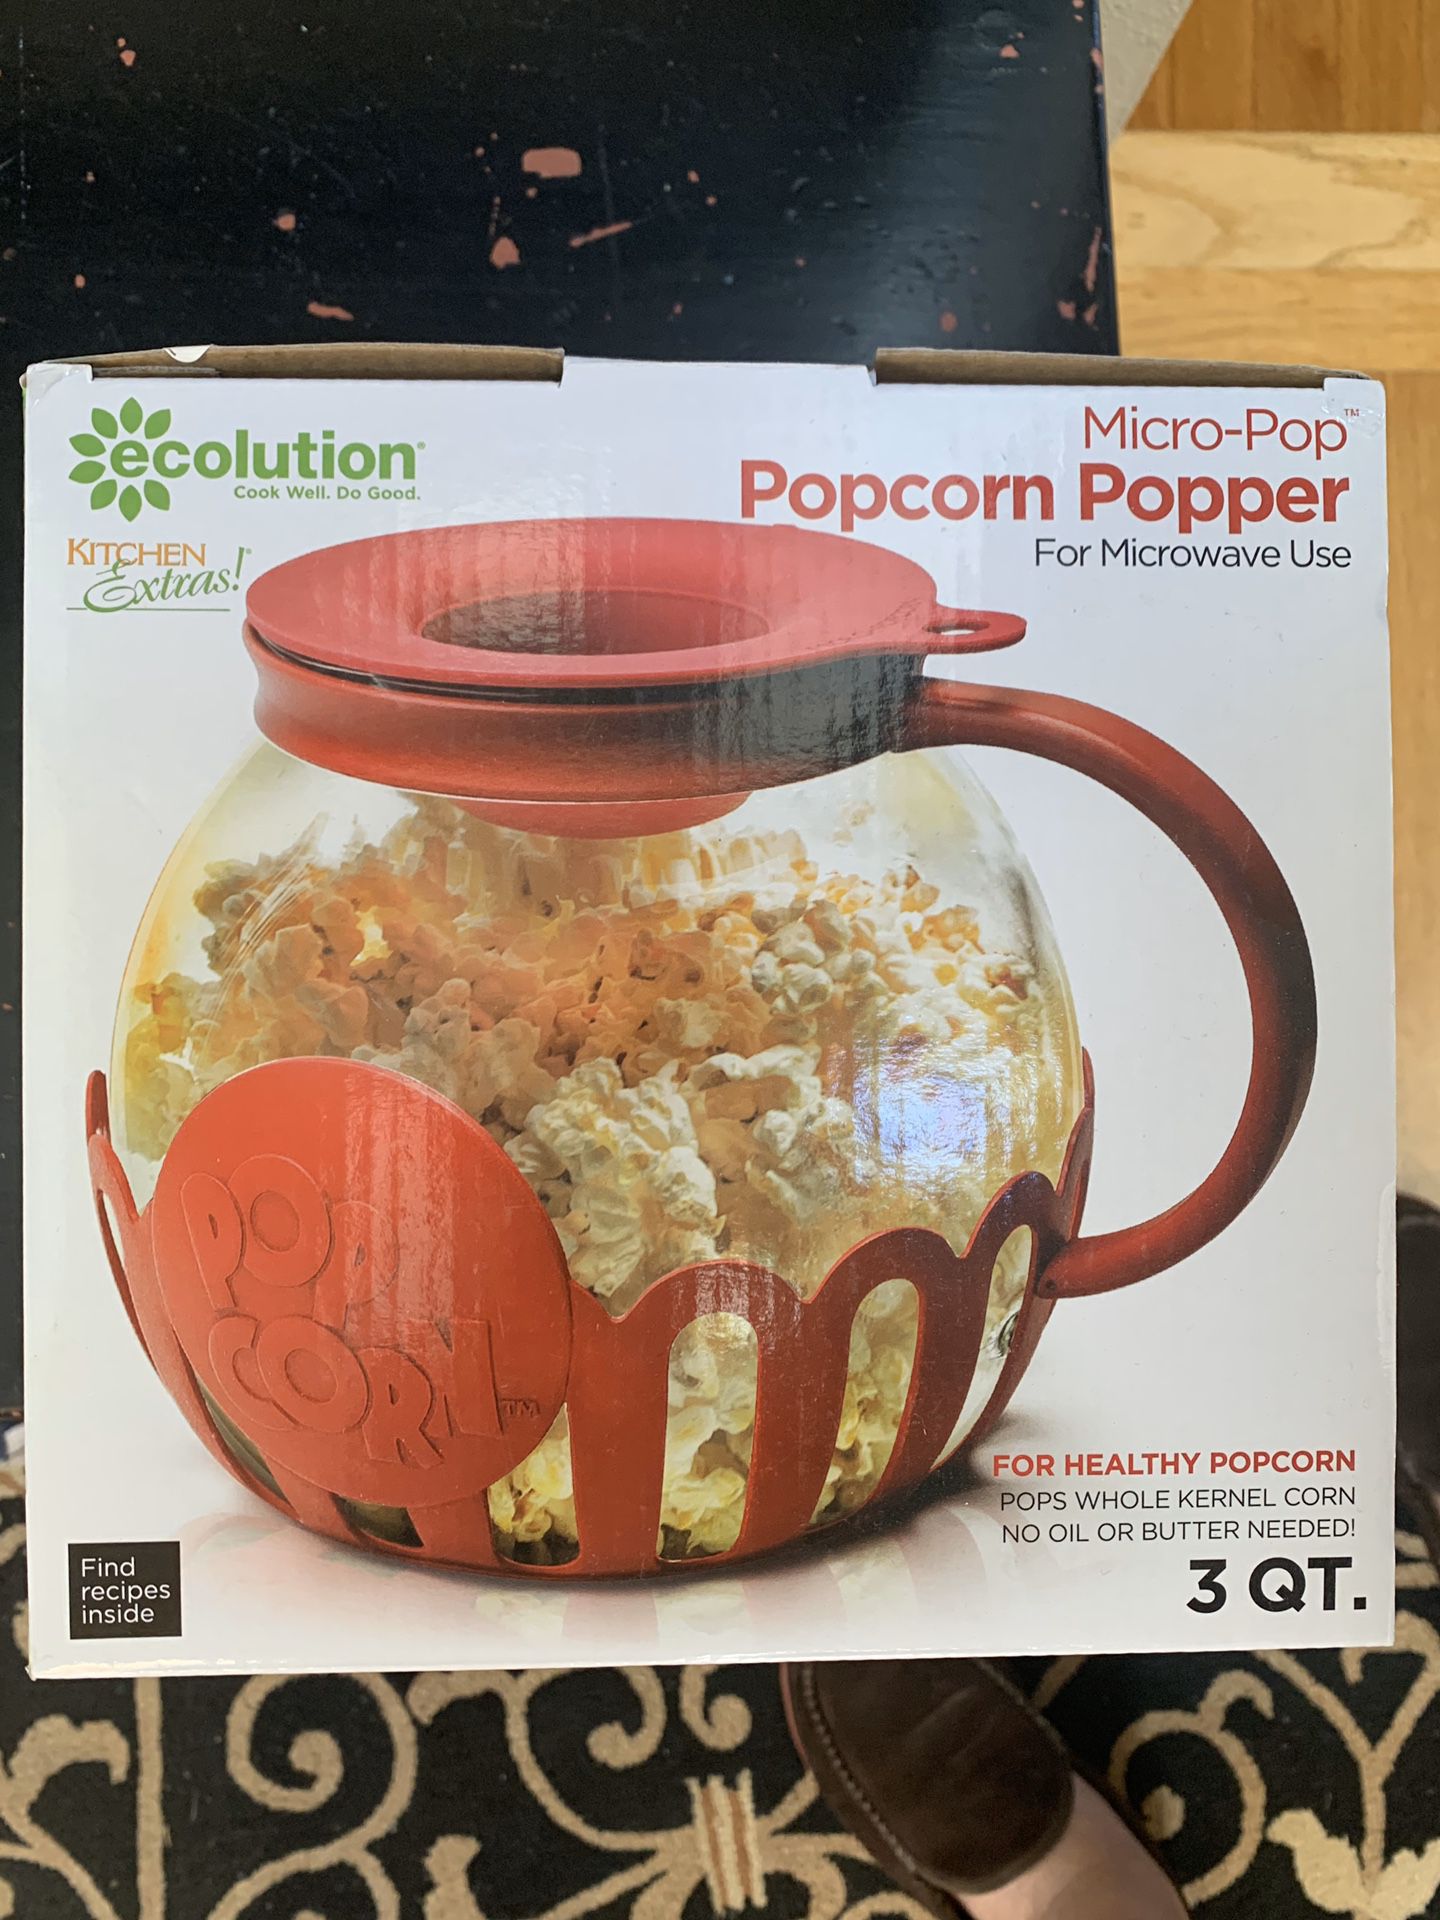 Microwave popcorn popper